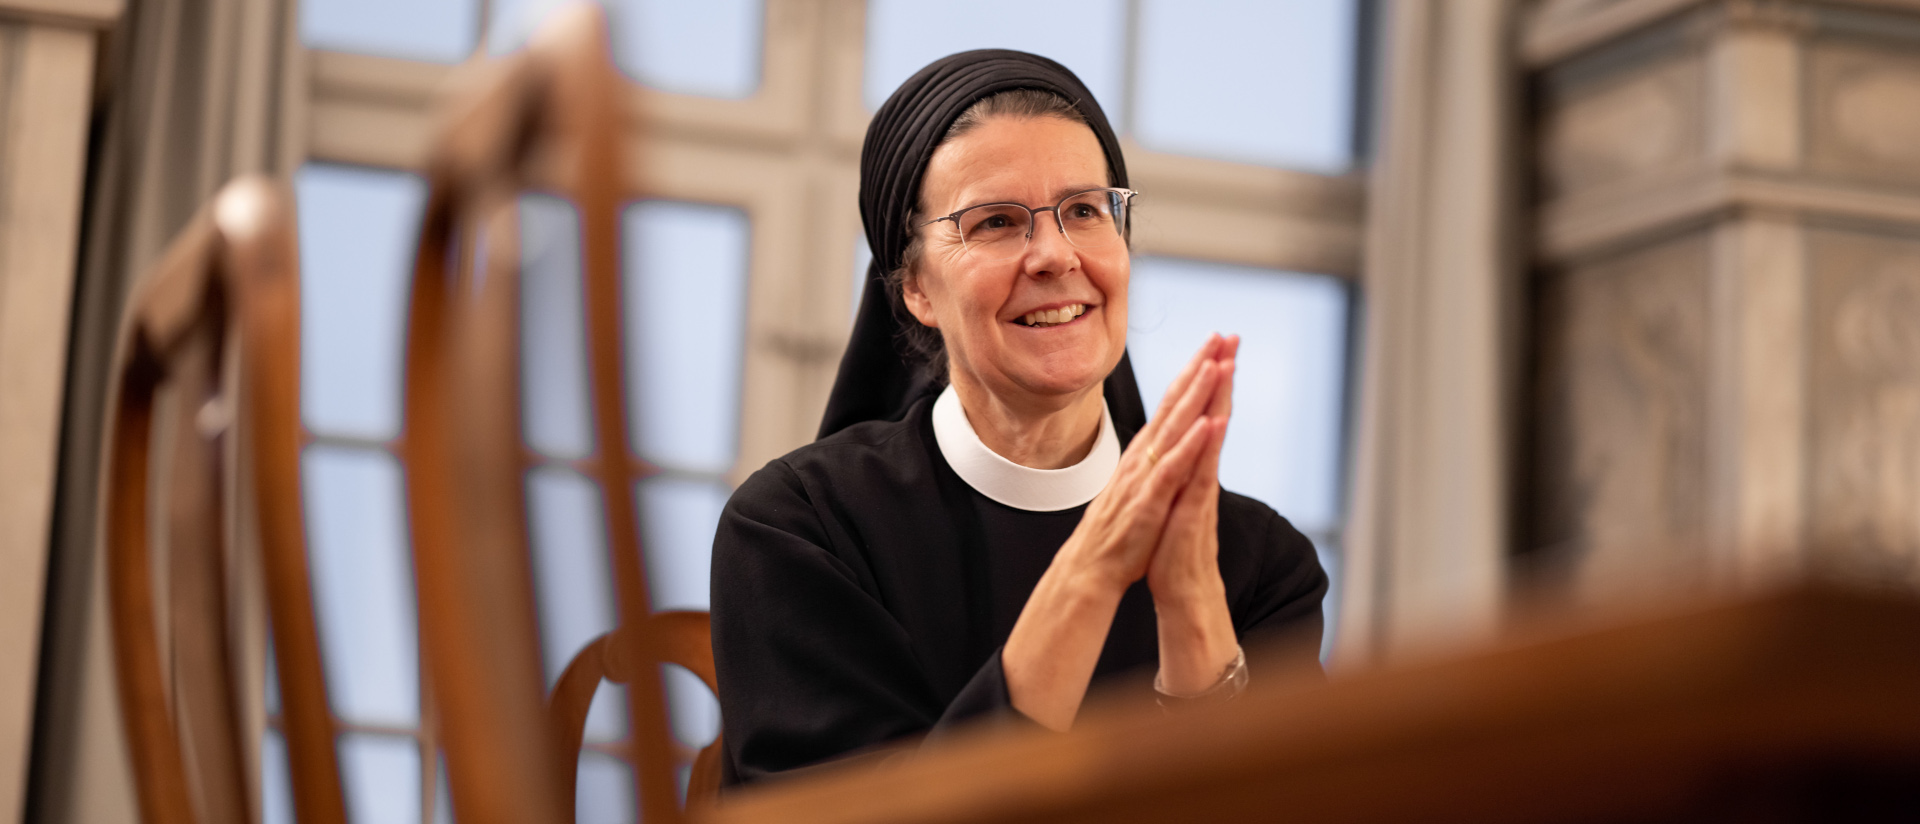 Irene Gassmann est prieure du couvent de Fahr (AG) depuis 2003 | © Christian Merz